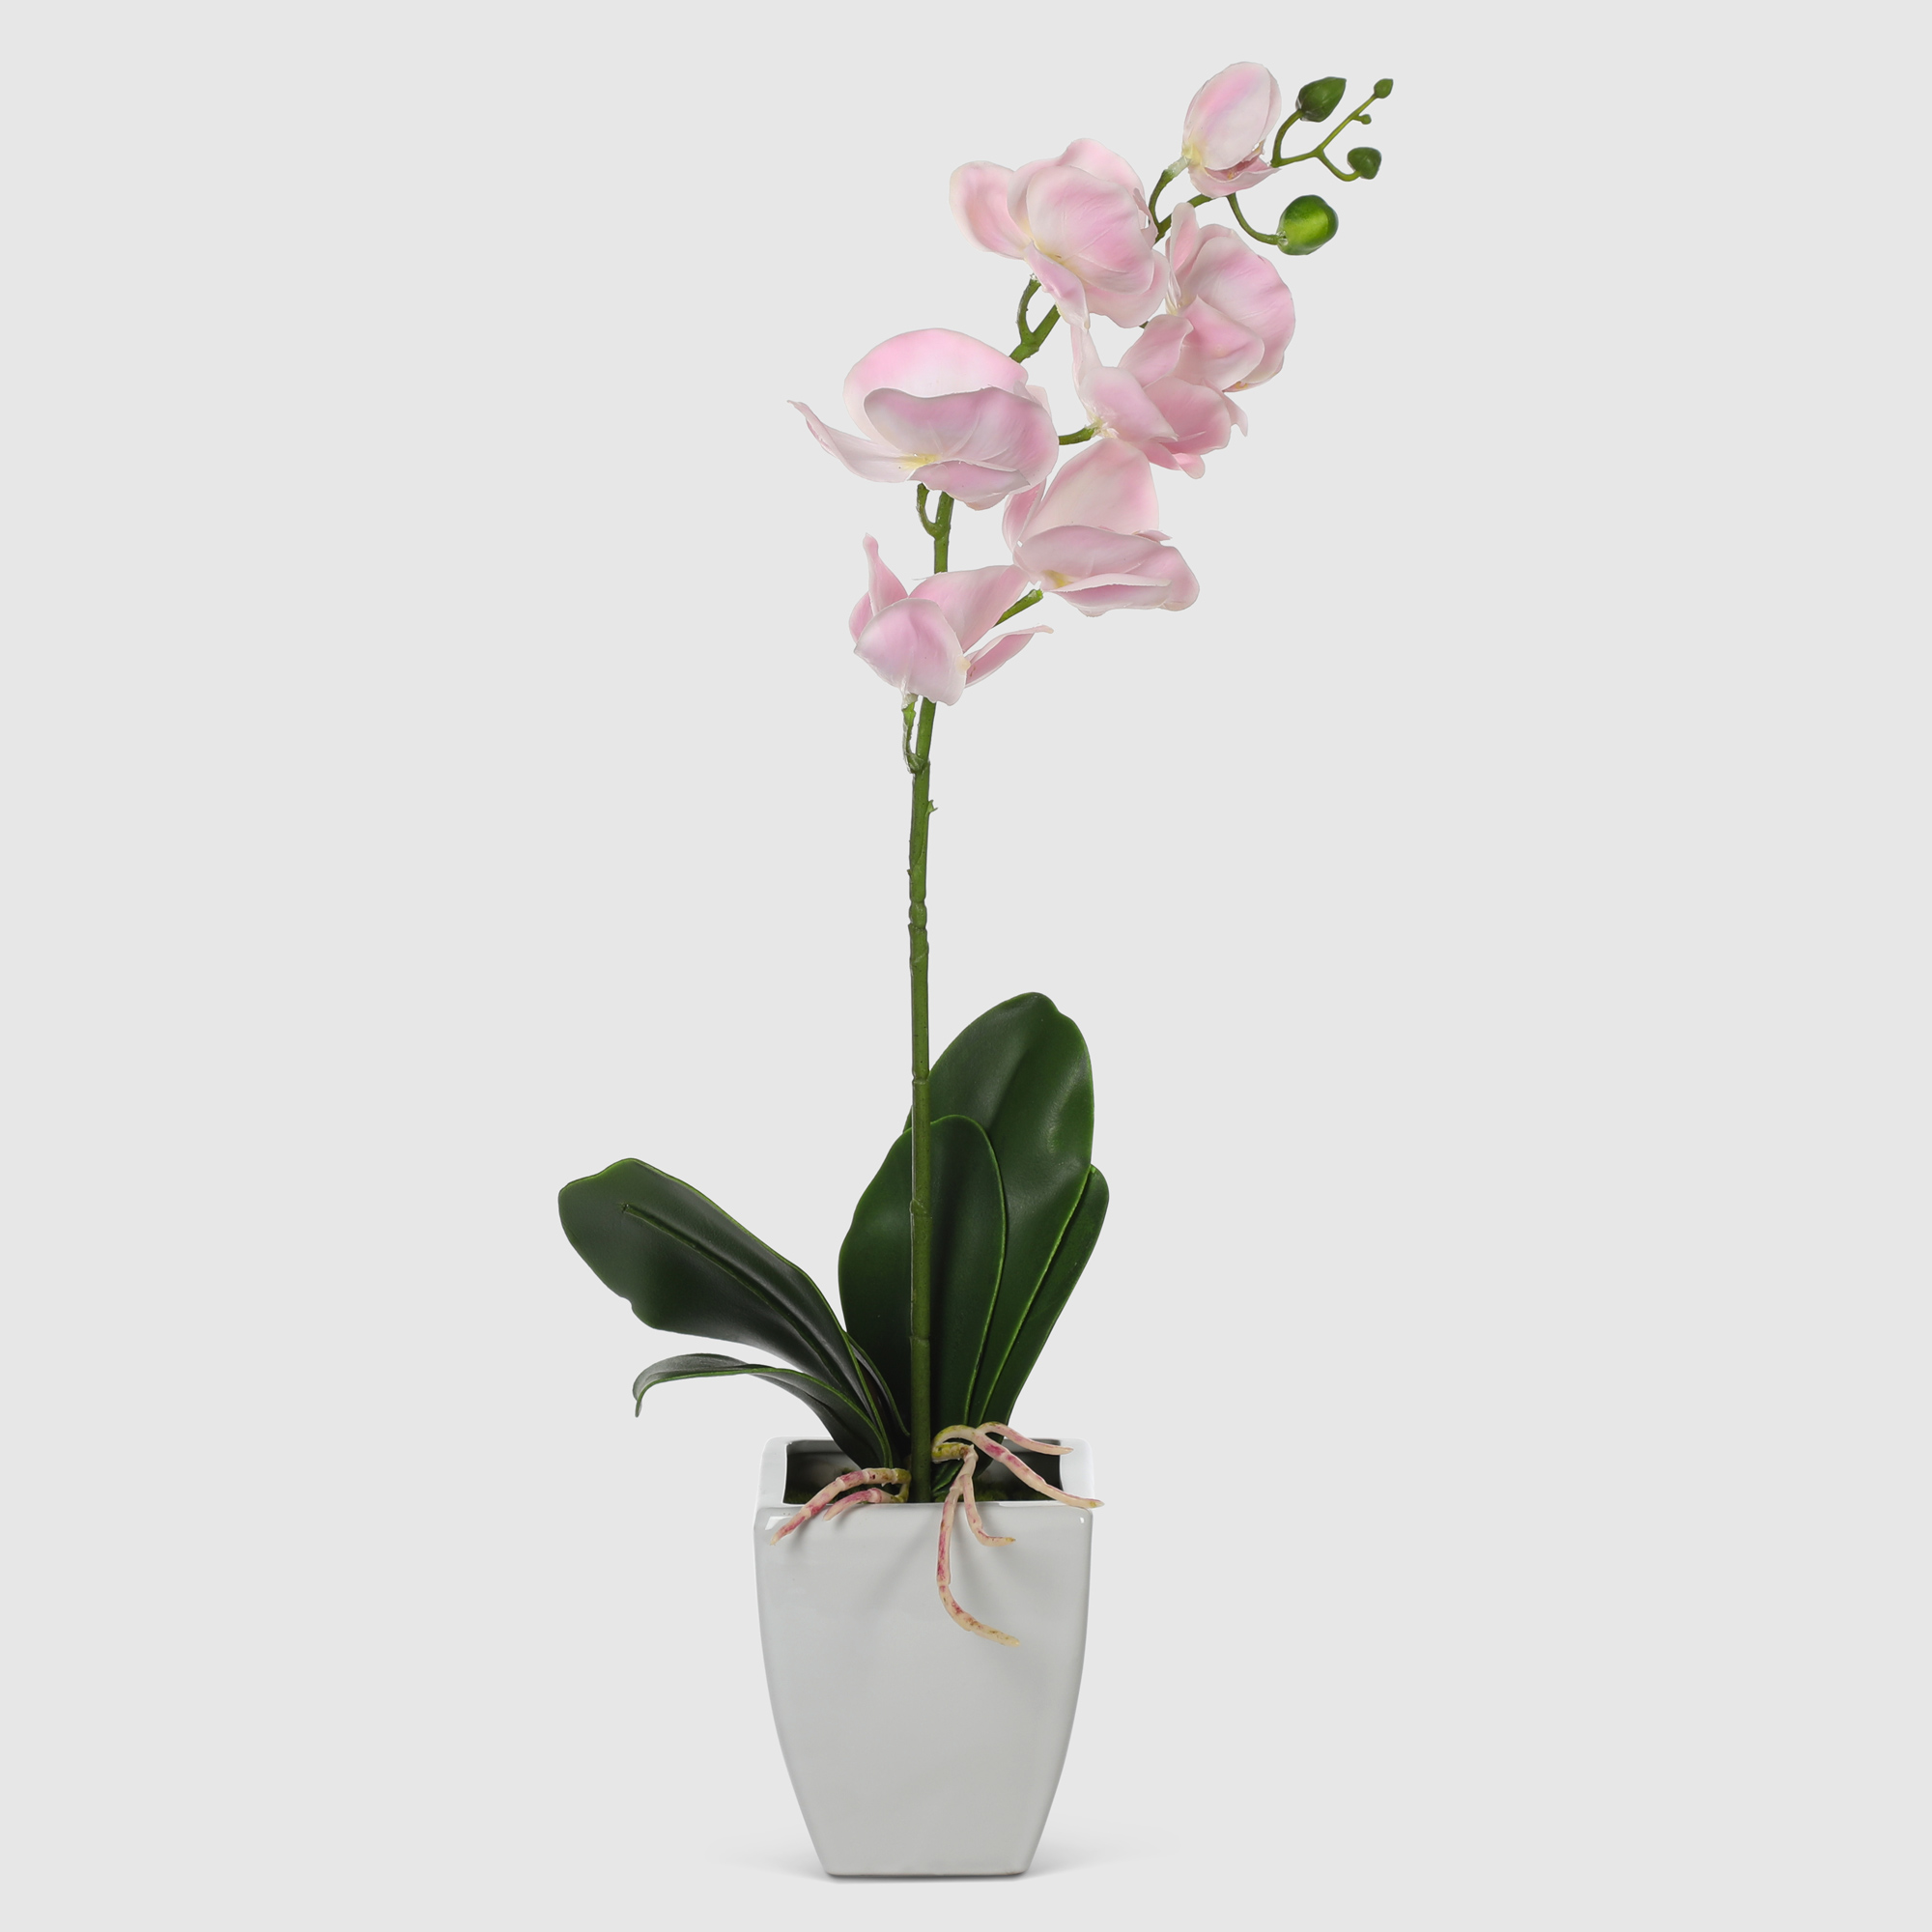 Орхидея в белом кашпо Конэко-О 575_10159_185 60 см цветок искусственный конэко о орхидея в декоративном кашпо 57 см